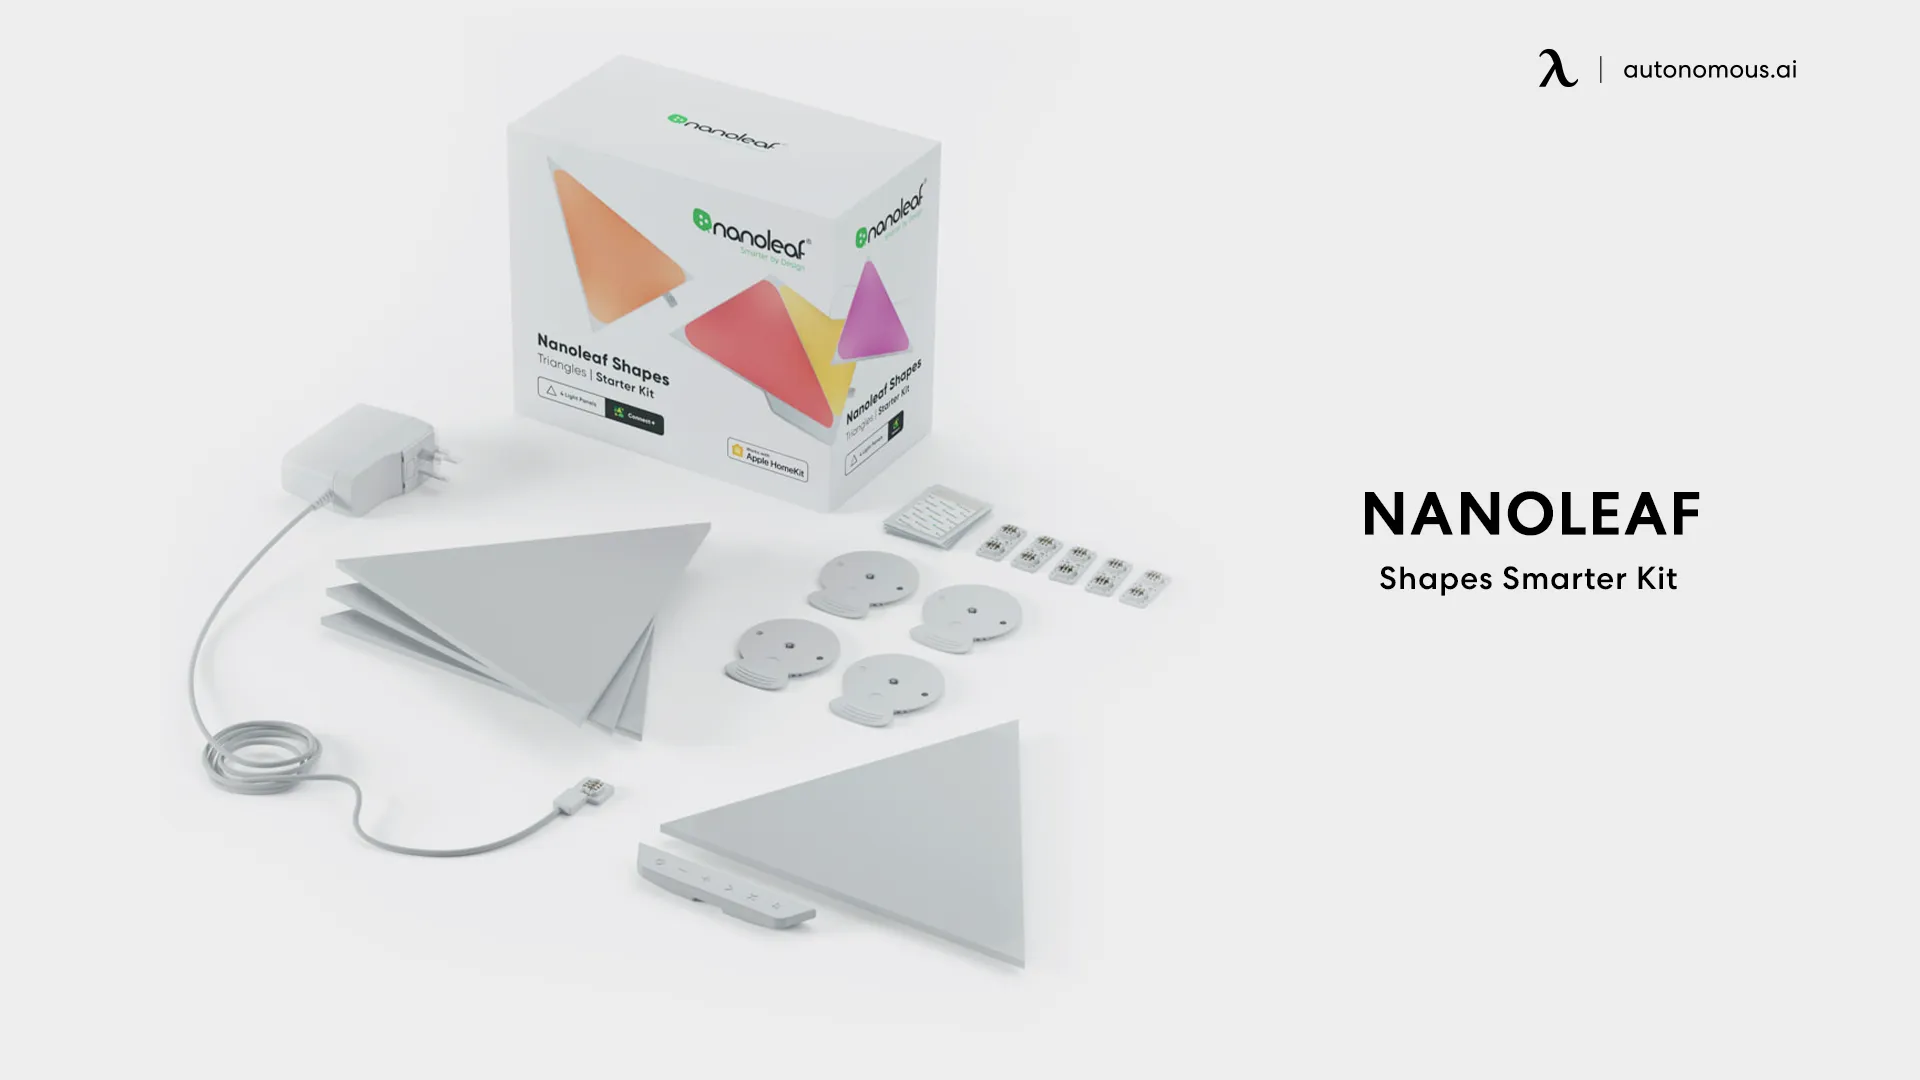 The Nanoleaf Shapes Smarter Kit